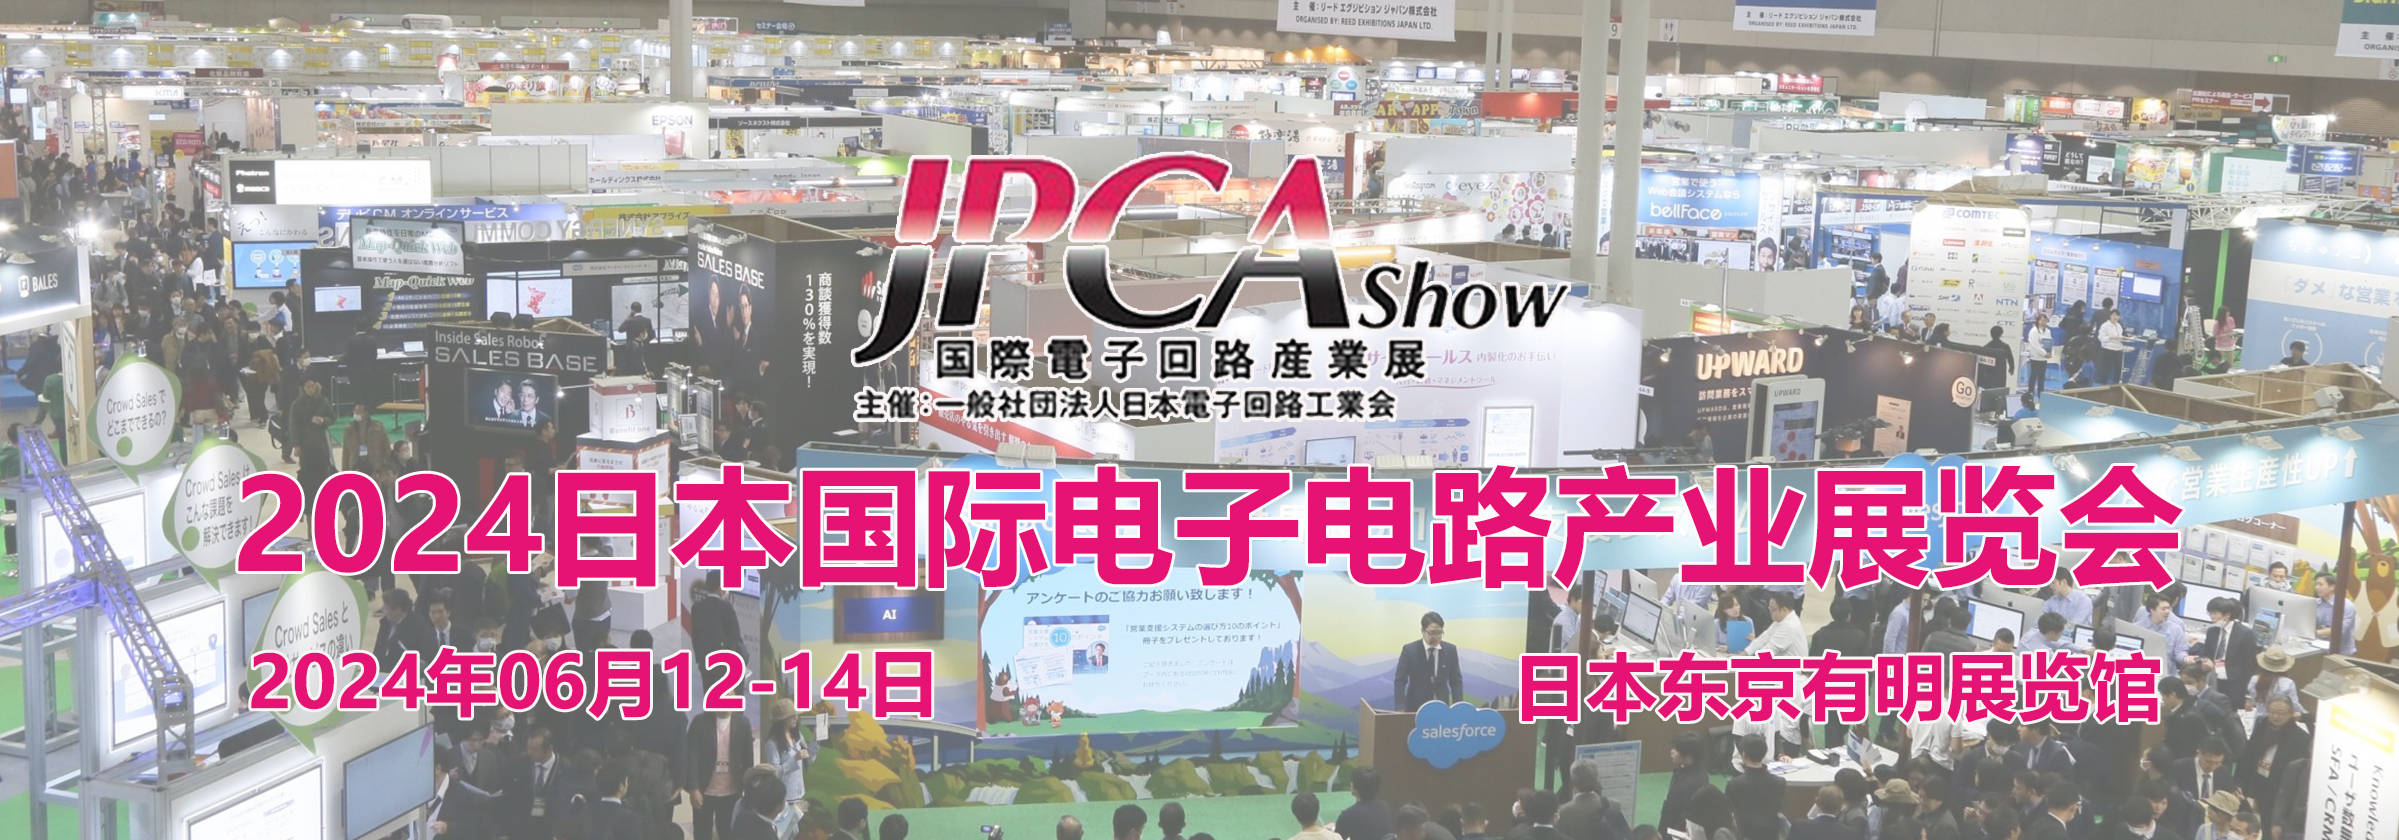 IM电竞 电子竞技平台2024日本东京国际电子电路产业展览会 JPCA SHOW